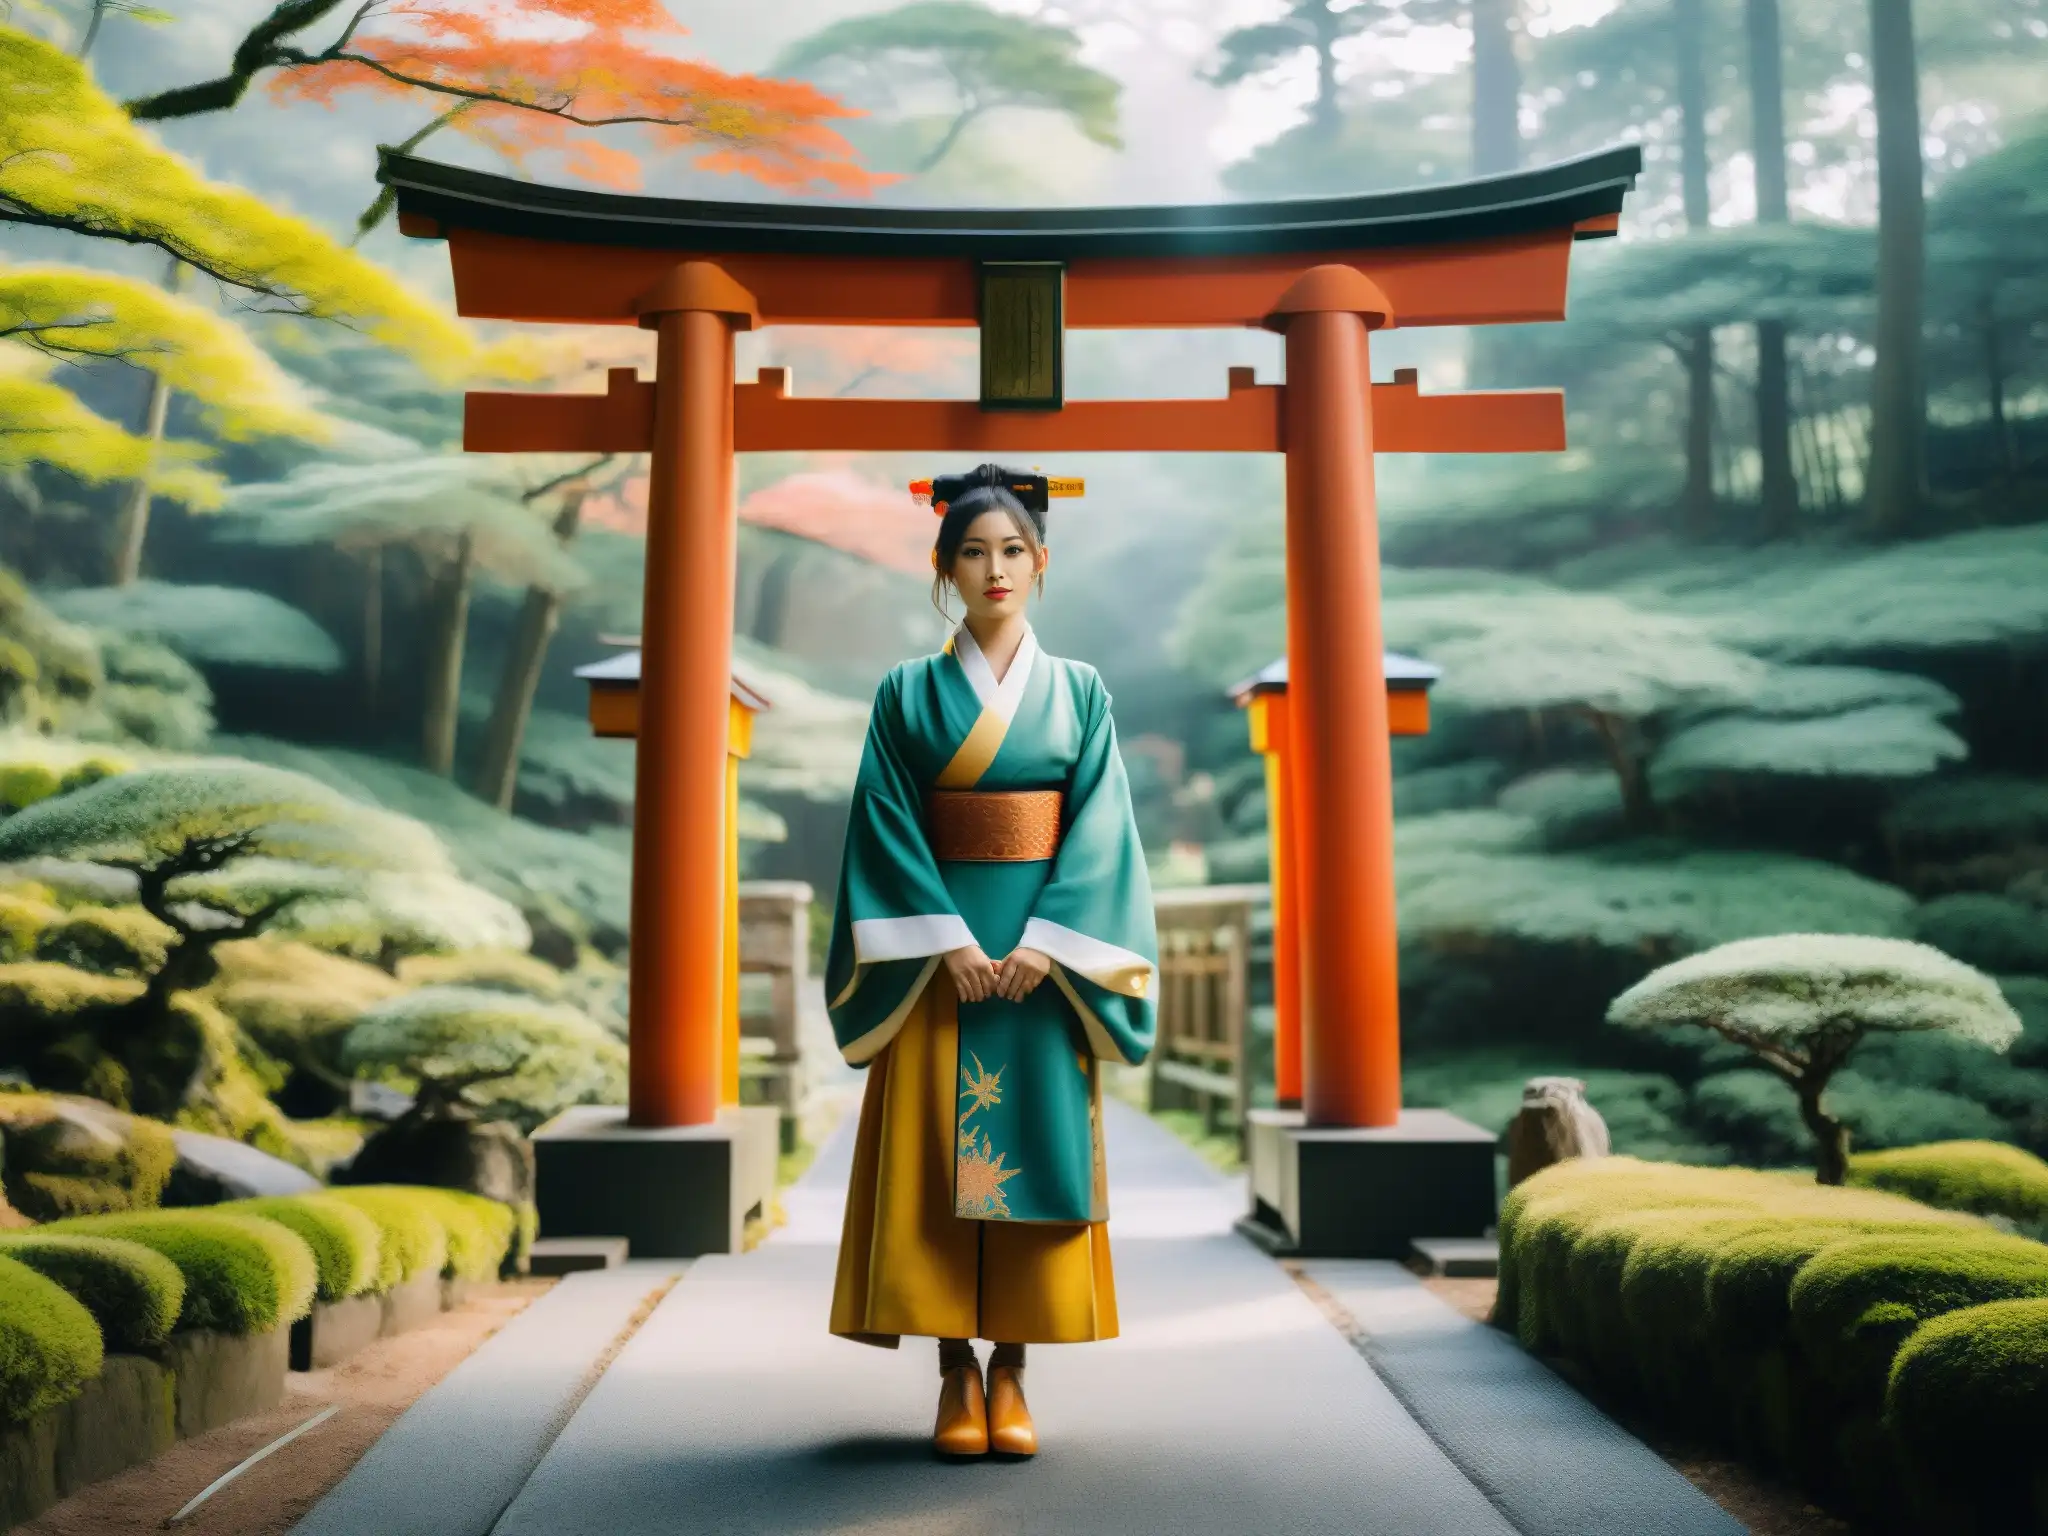 Un influencer japonés reinventando mitos, vistiendo fusión de tradición y modernidad frente a un torii, rodeado de misterio y naturaleza dorada